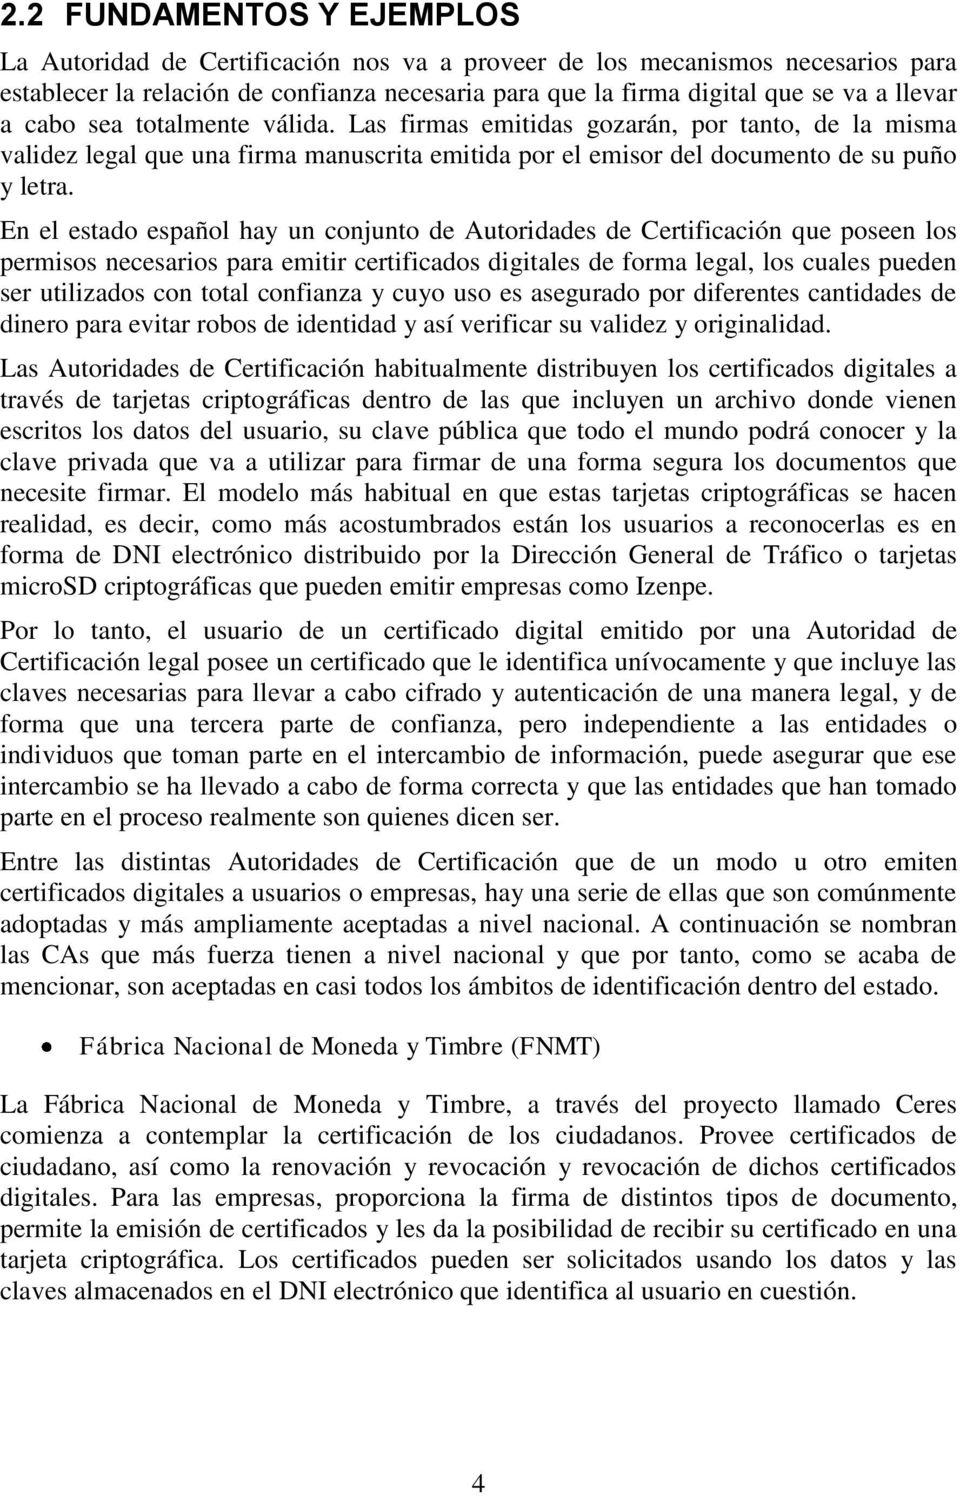 En el estado español hay un conjunto de Autoridades de Certificación que poseen los permisos necesarios para emitir certificados digitales de forma legal, los cuales pueden ser utilizados con total